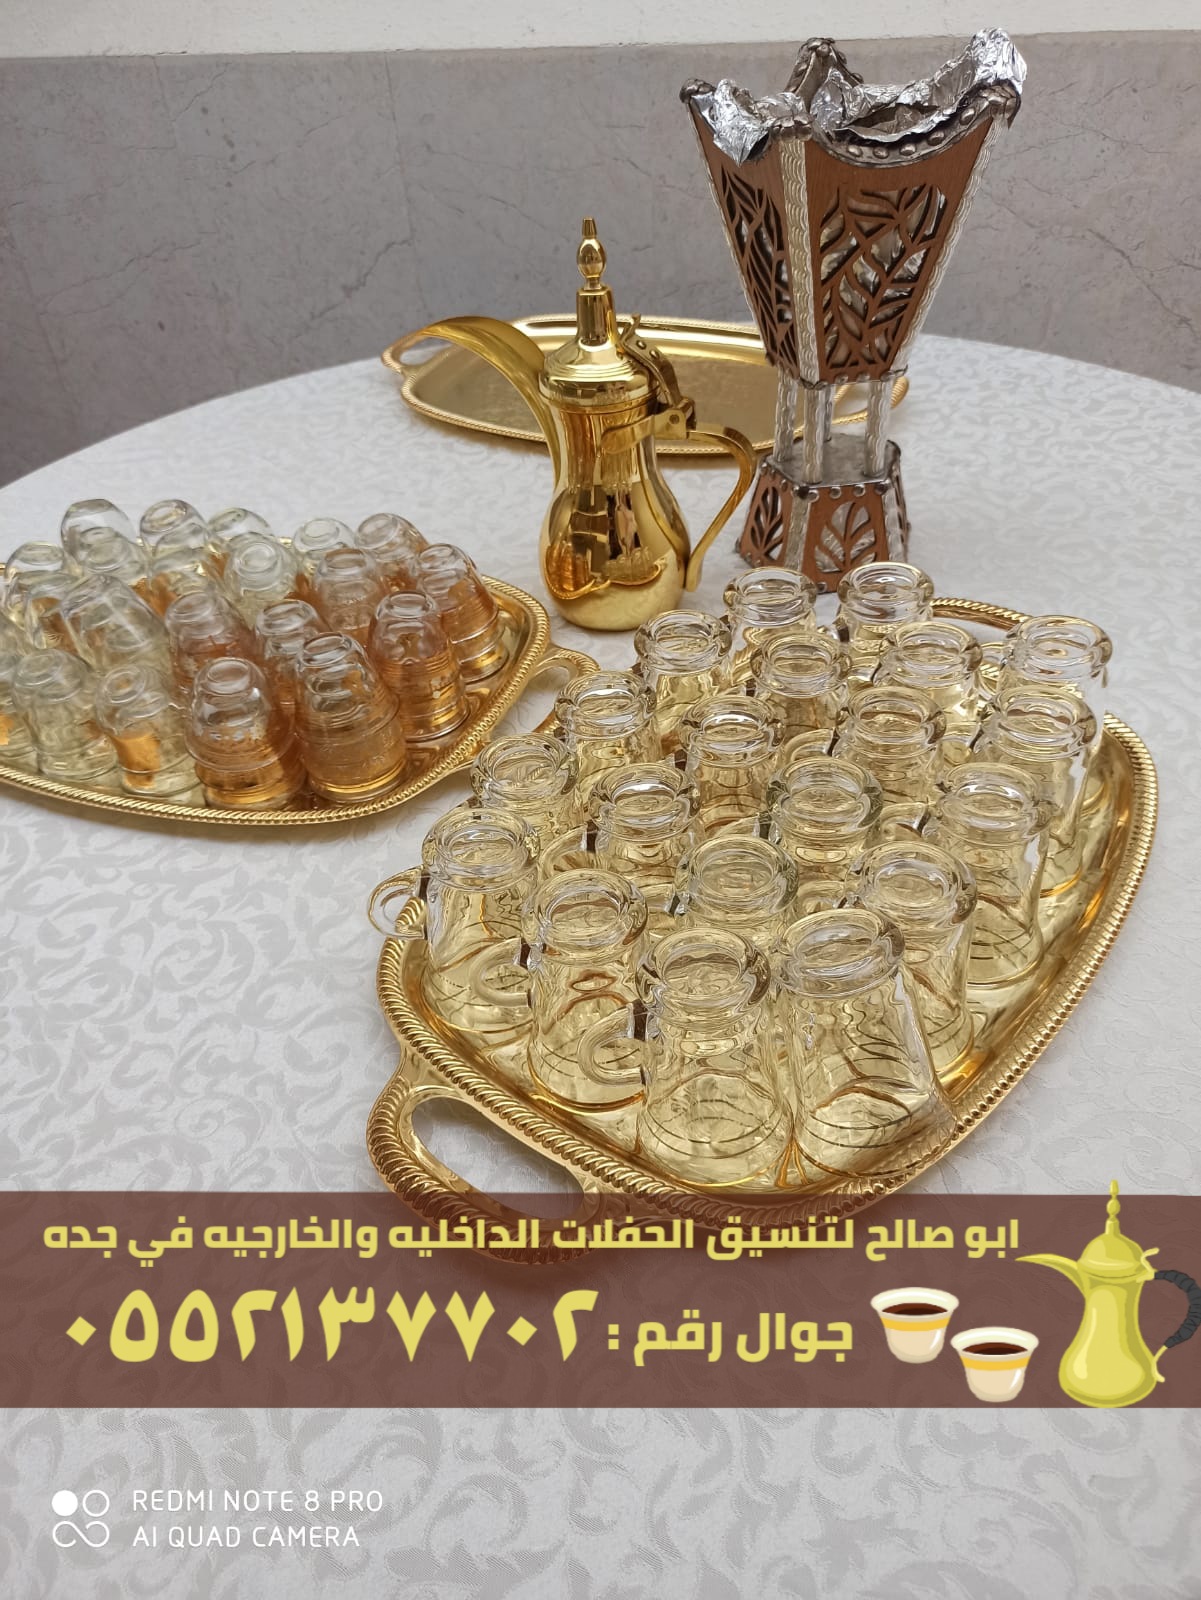 قهوجي ضيافه و مباشرين قهوة في جدة,0552137702